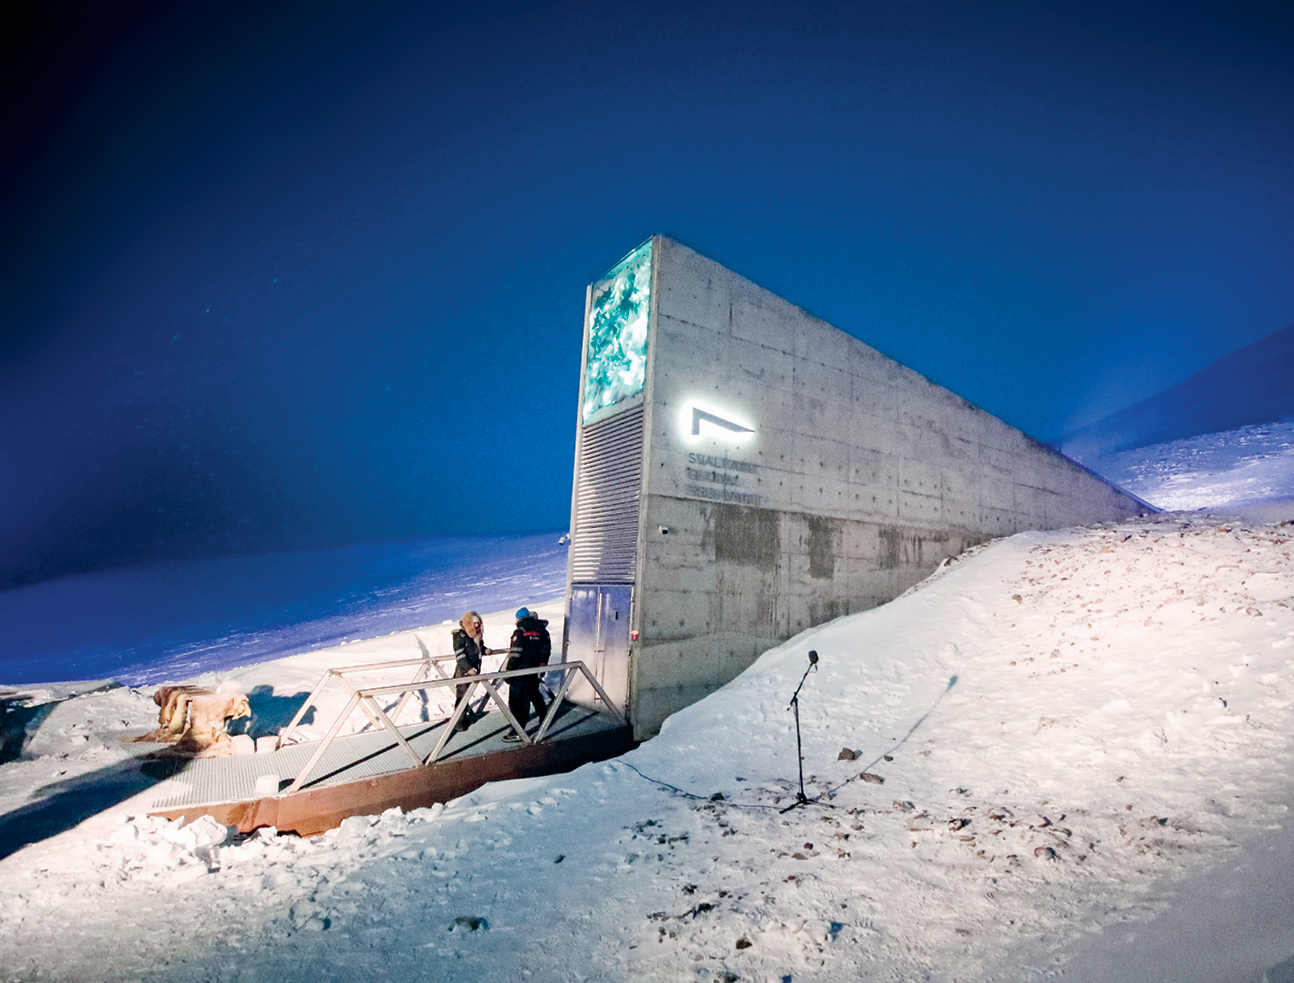 Fotografia. Vista para uma construção de concreto triangular com uma porta de vidro e uma passarela na entrada com duas pessoas em pé. Ao redor da construção, superfície inclinada coberta de neve e céu azul noturno.